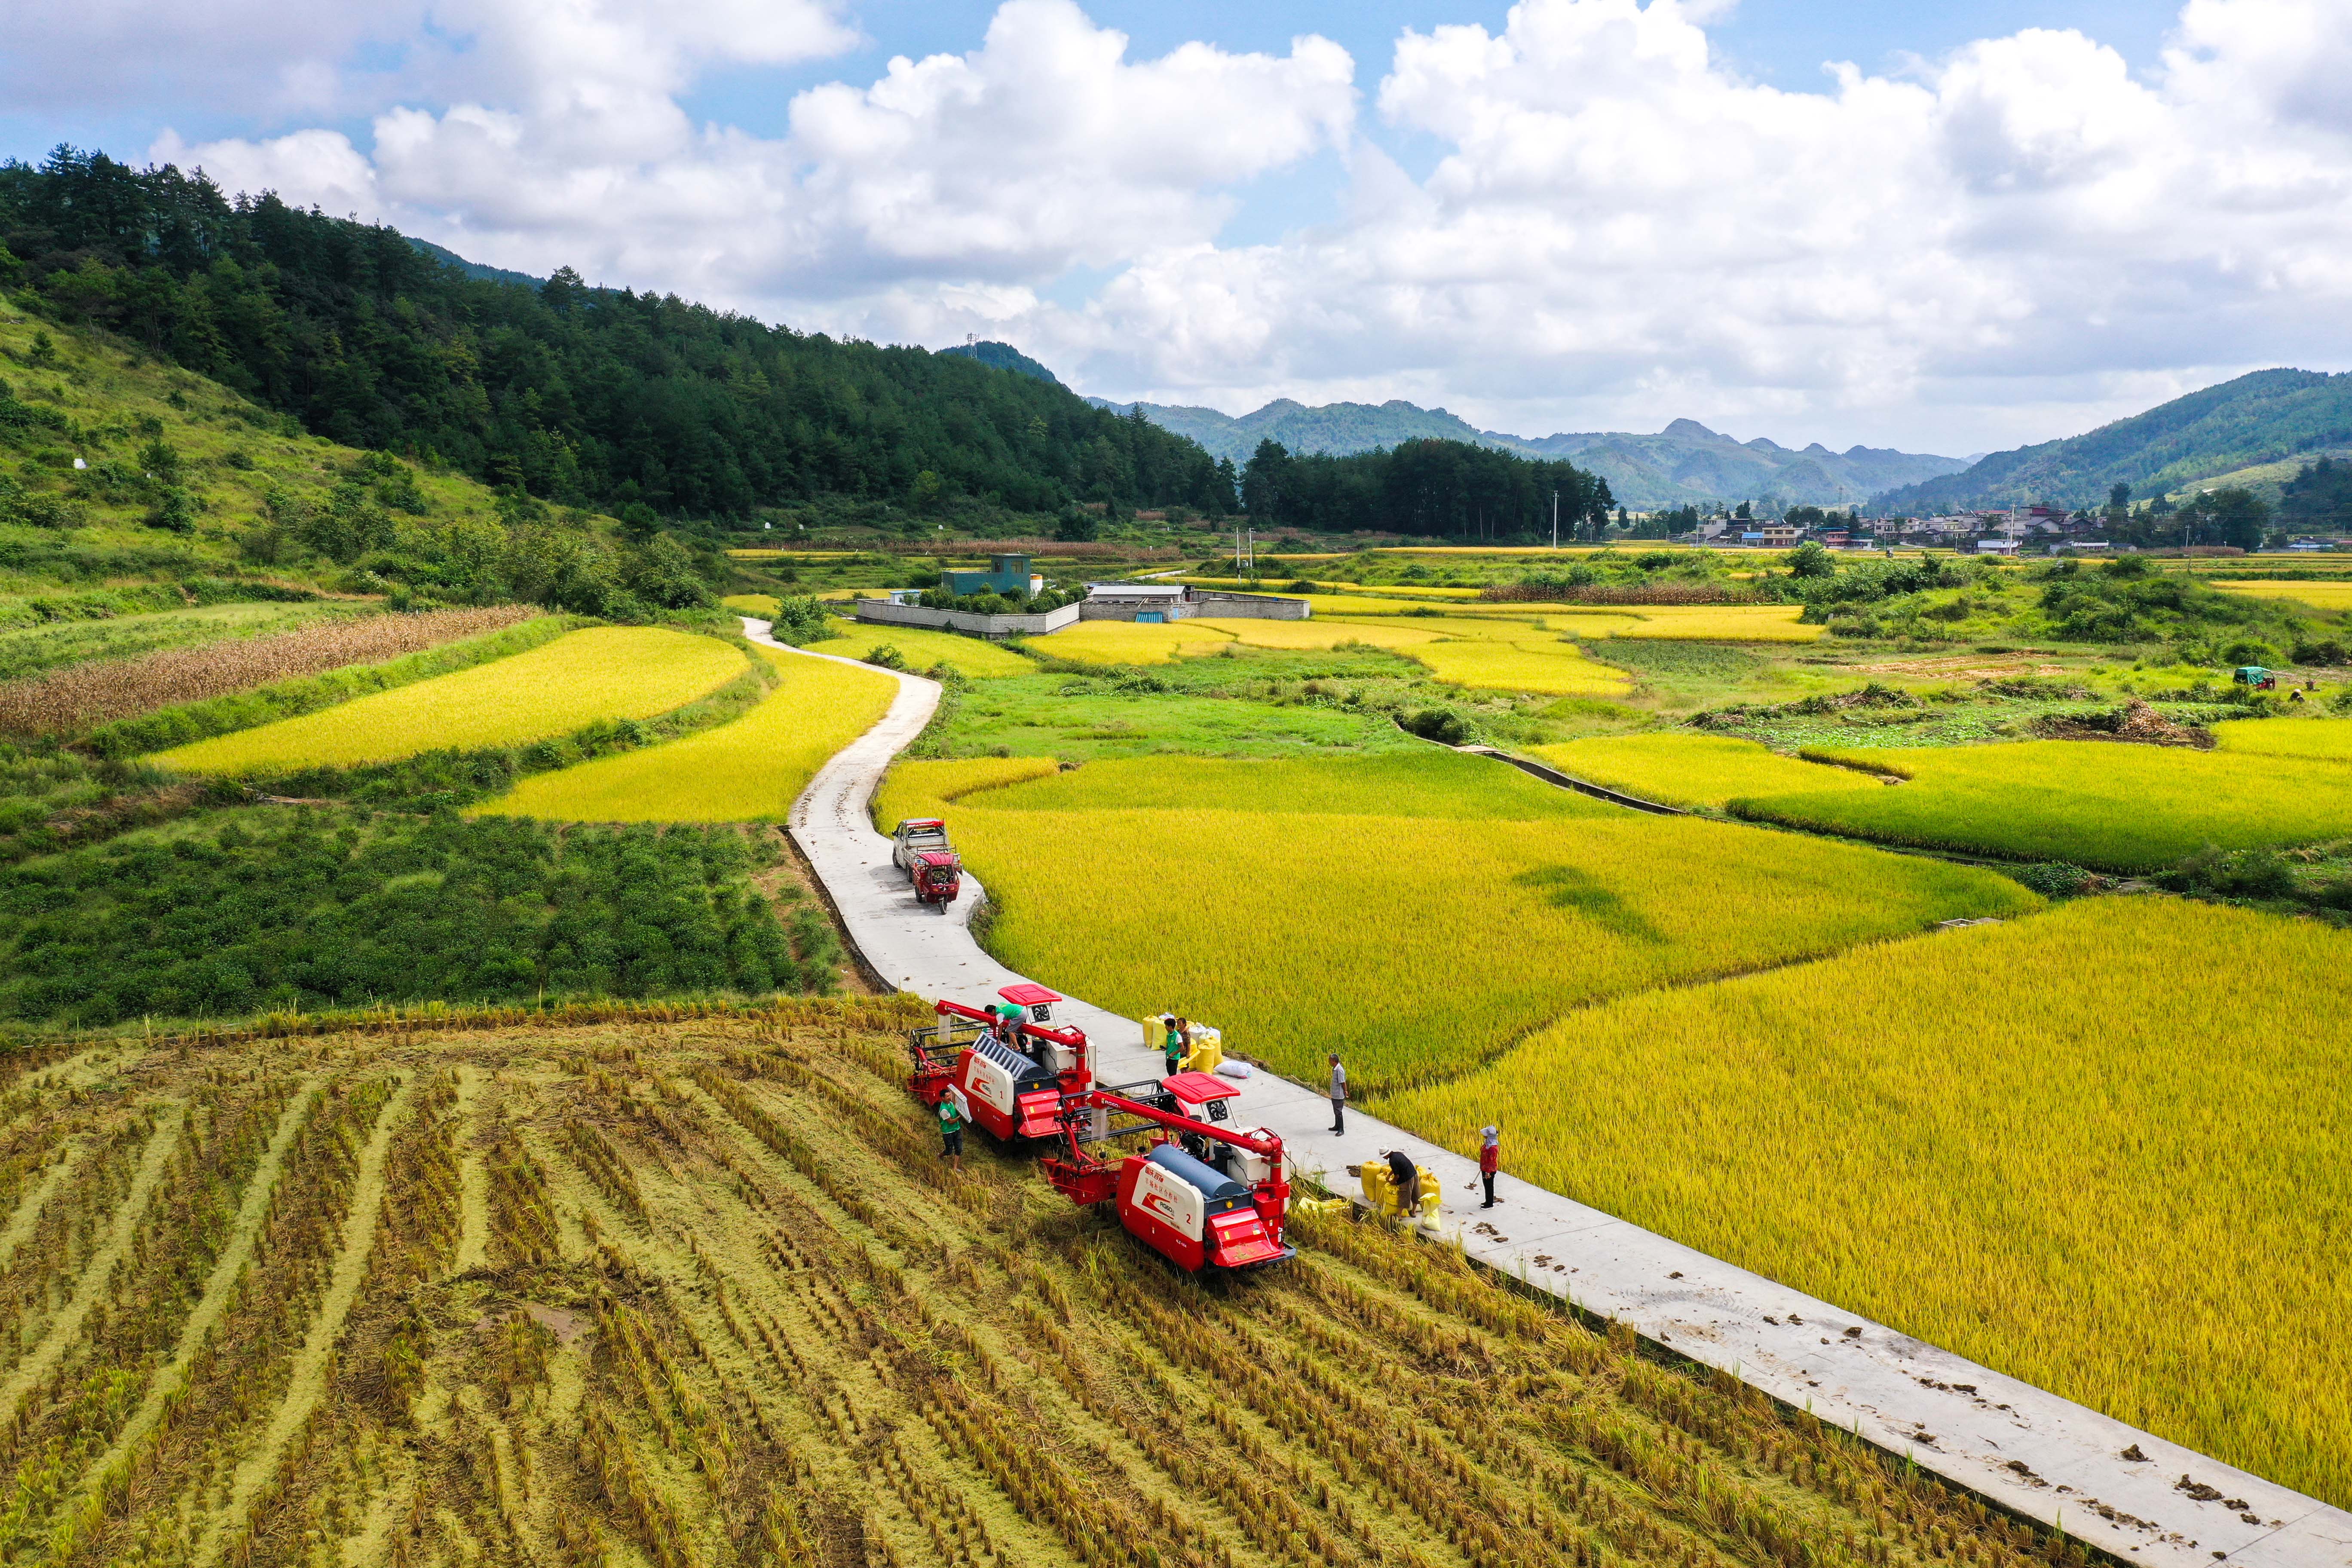 9月15日，贵州省龙里县湾滩河镇羊场社区的农民在抢收稻谷（无人机照片）。新华社记者 杨文斌 摄